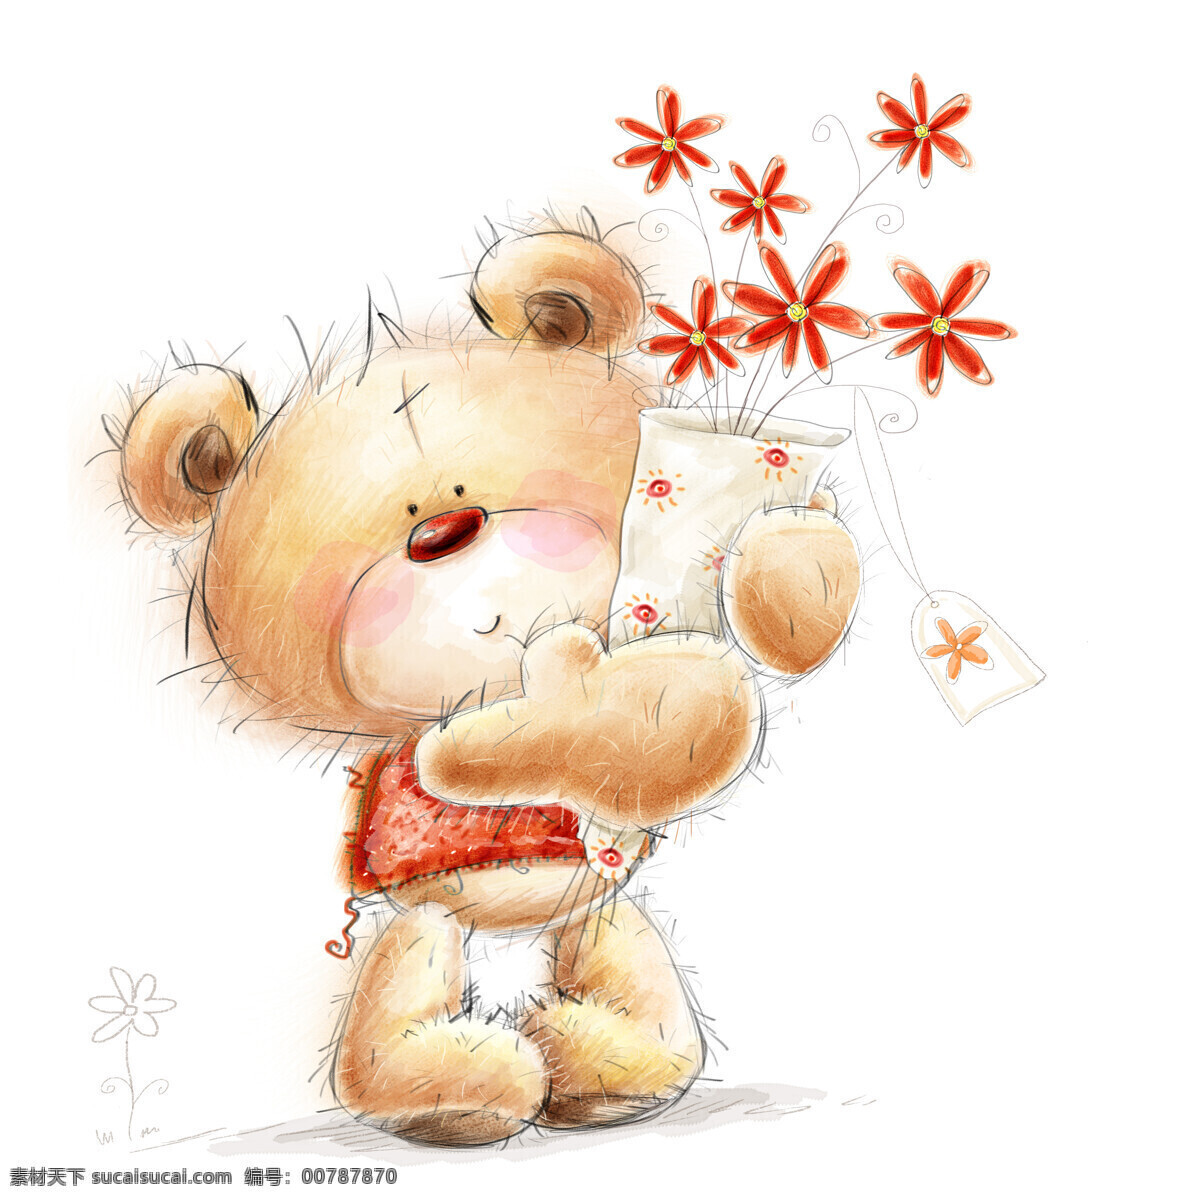 抱 花束 小 熊 插图 节日庆典 节日元素 卡通动物插图 生日快乐 卡通小熊 生活百科